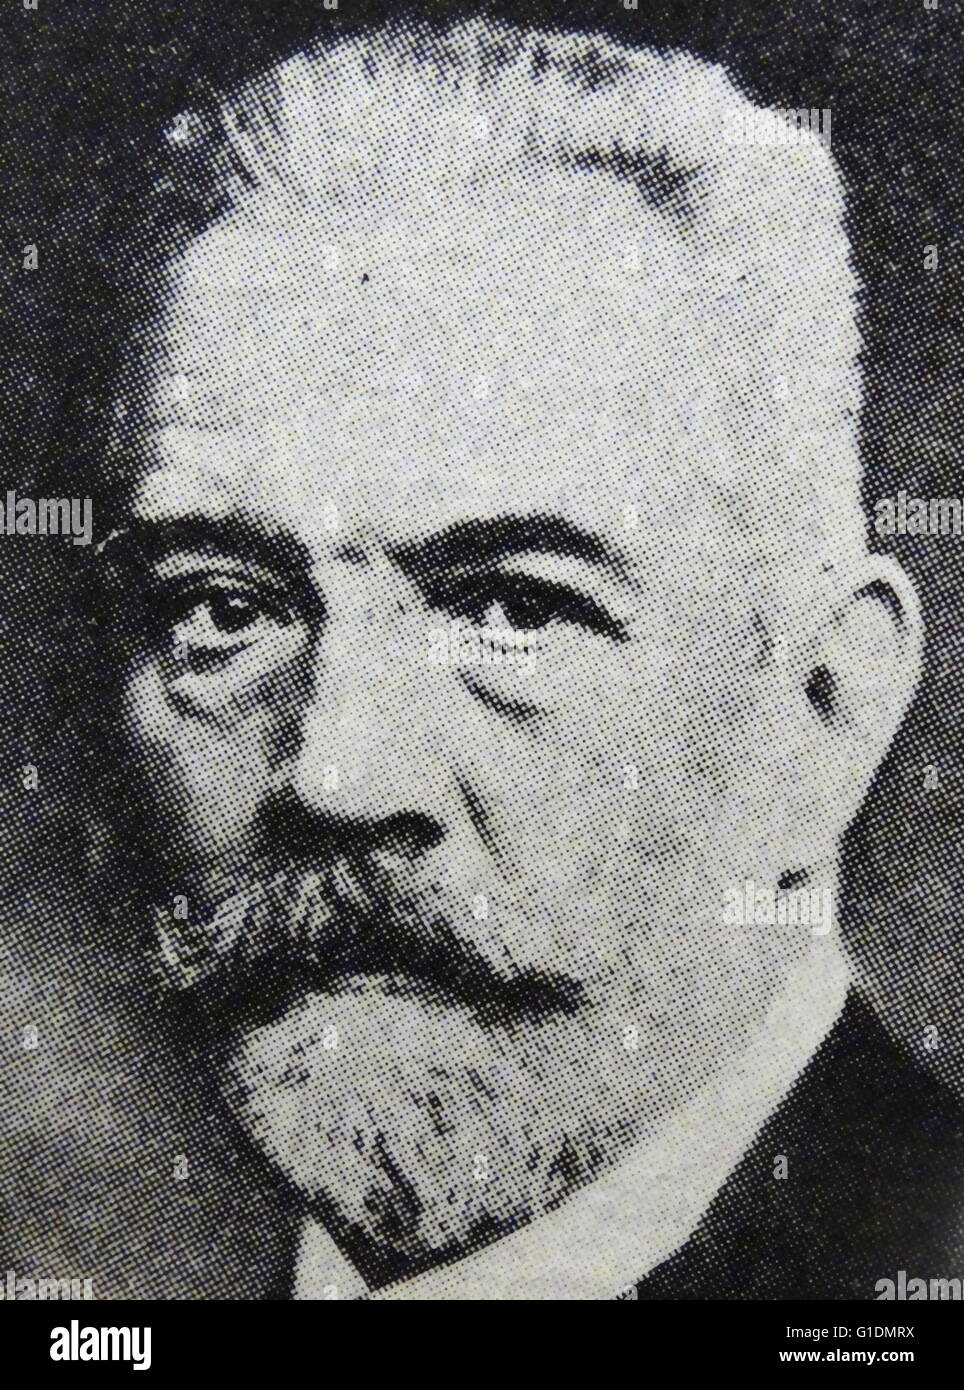 Porträt von Theobald von Bethmann-Hollweg (1856-1921), deutscher Politiker und Staatsmann, der als Kanzler des Deutschen Reiches diente. Vom 20. Jahrhundert Stockfoto